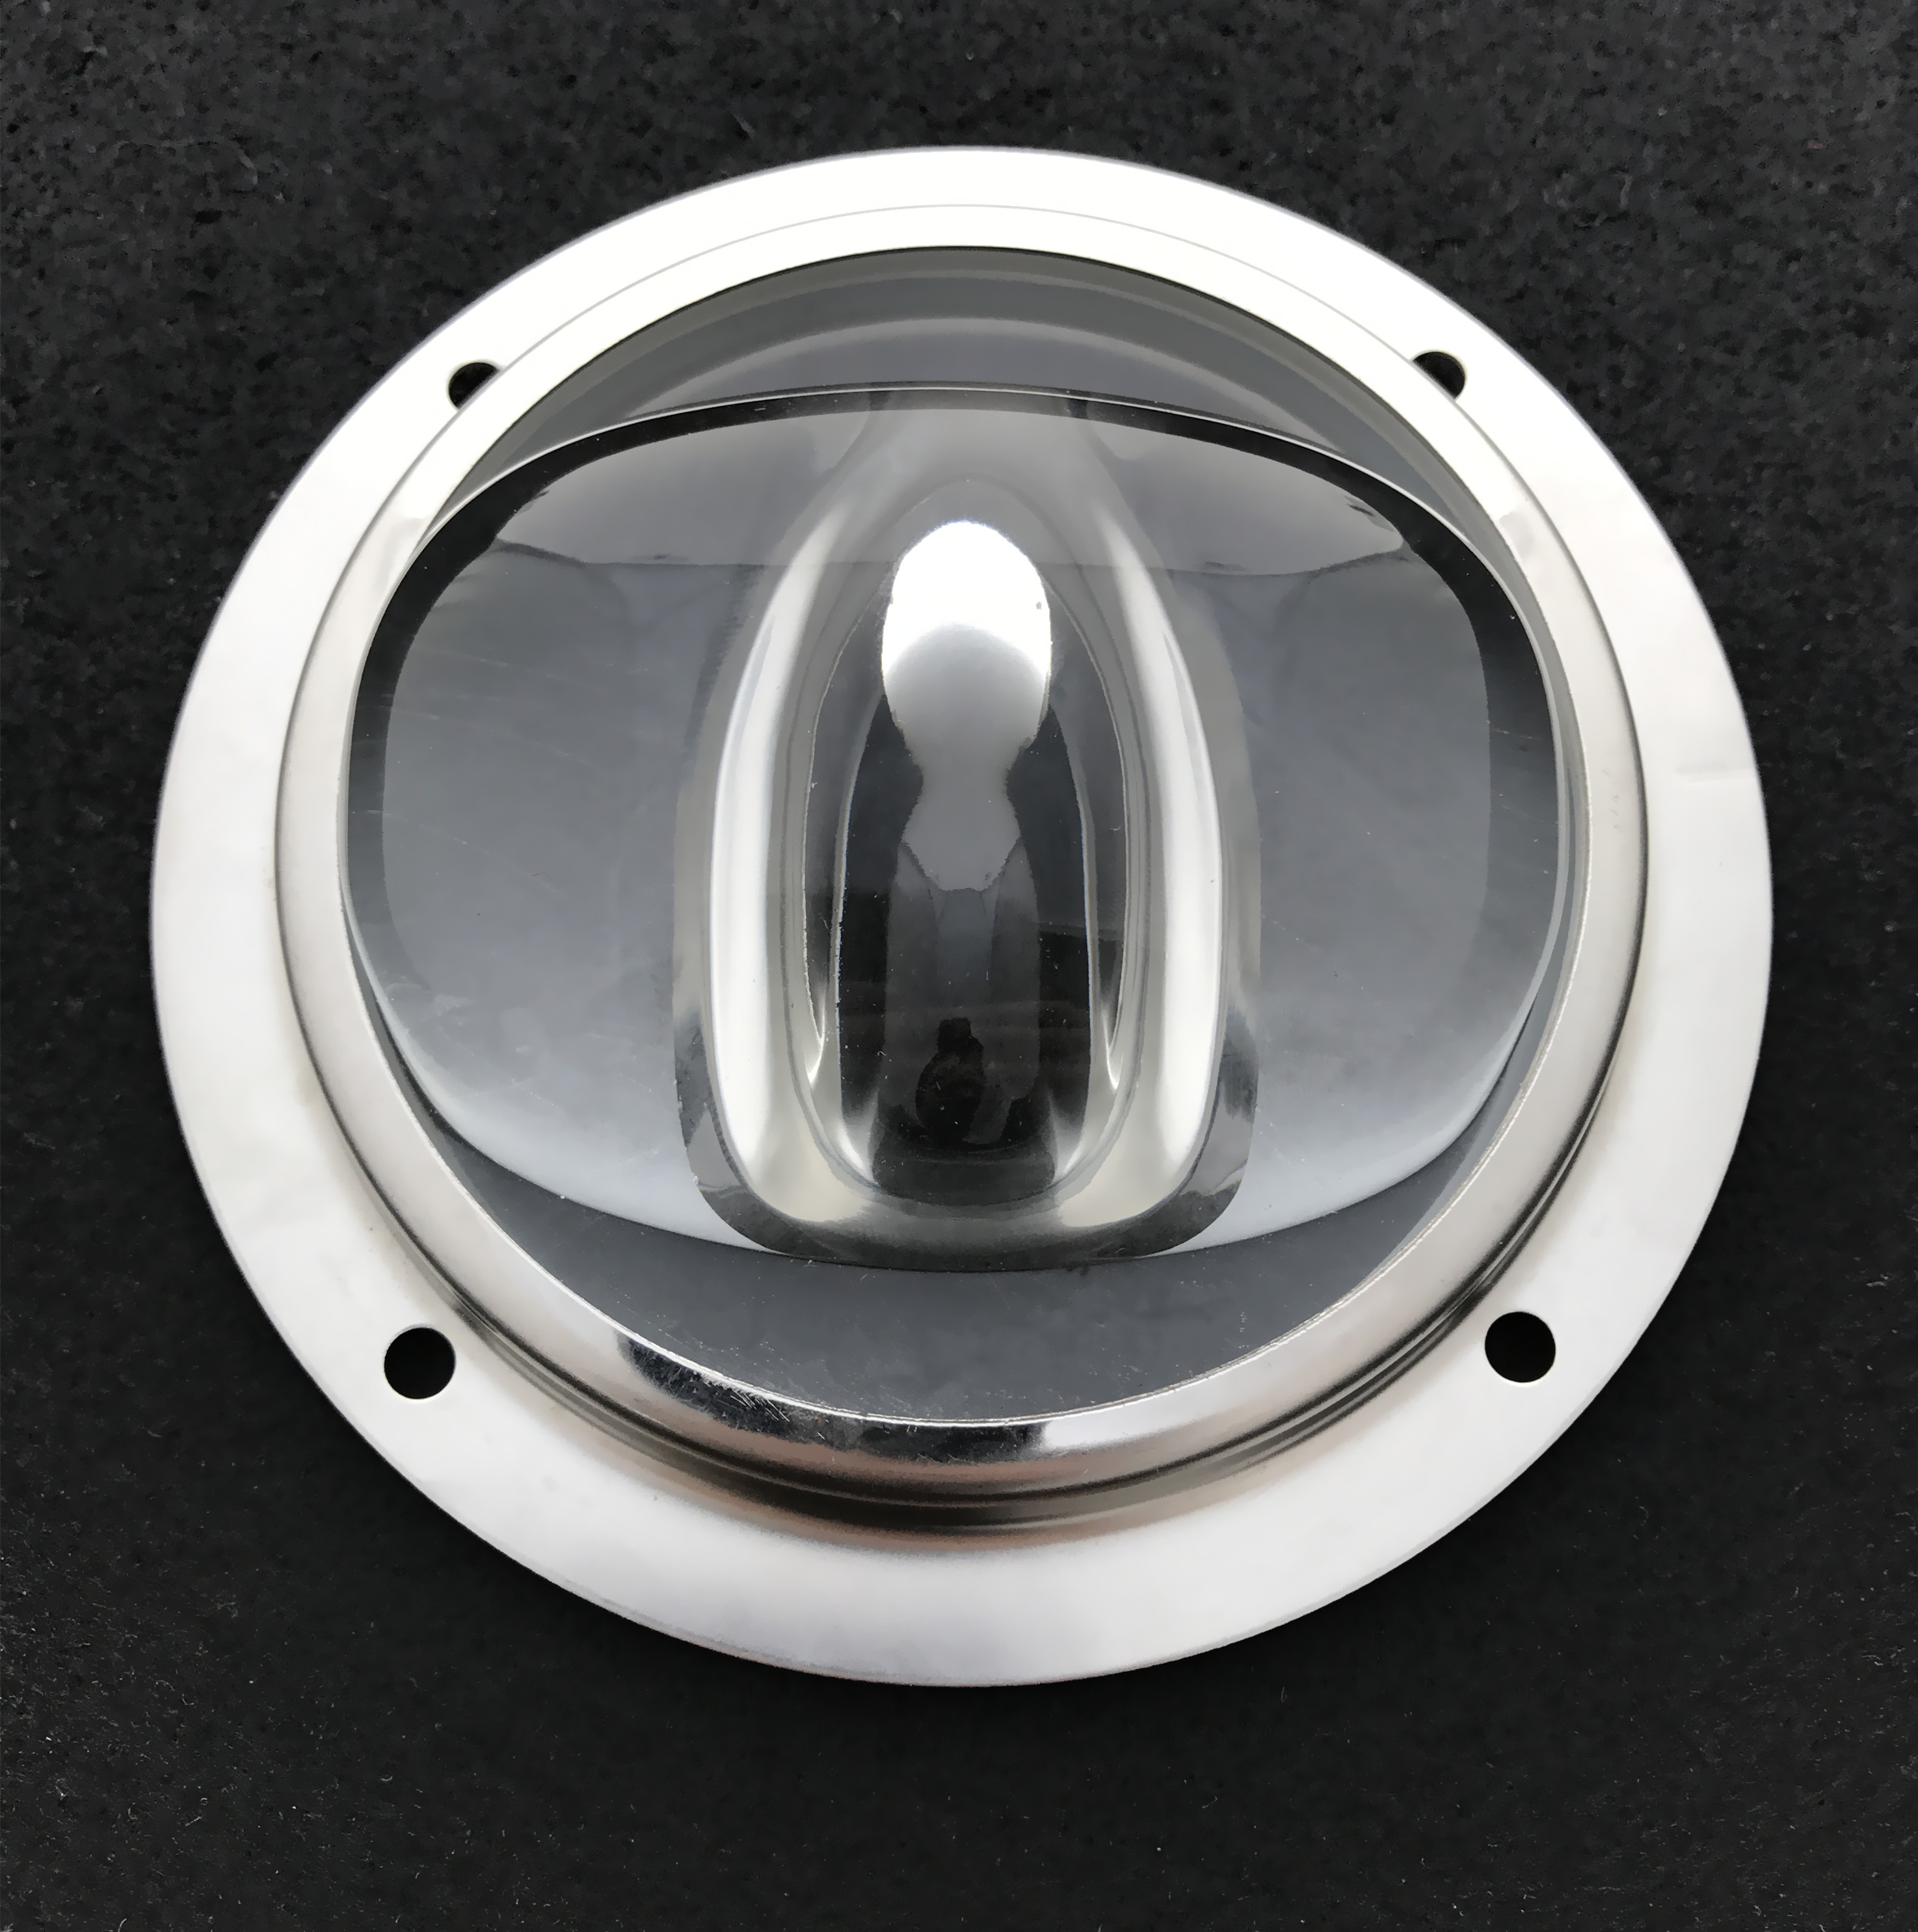 78mm tunnel lighting cob led glass lens for cree led light